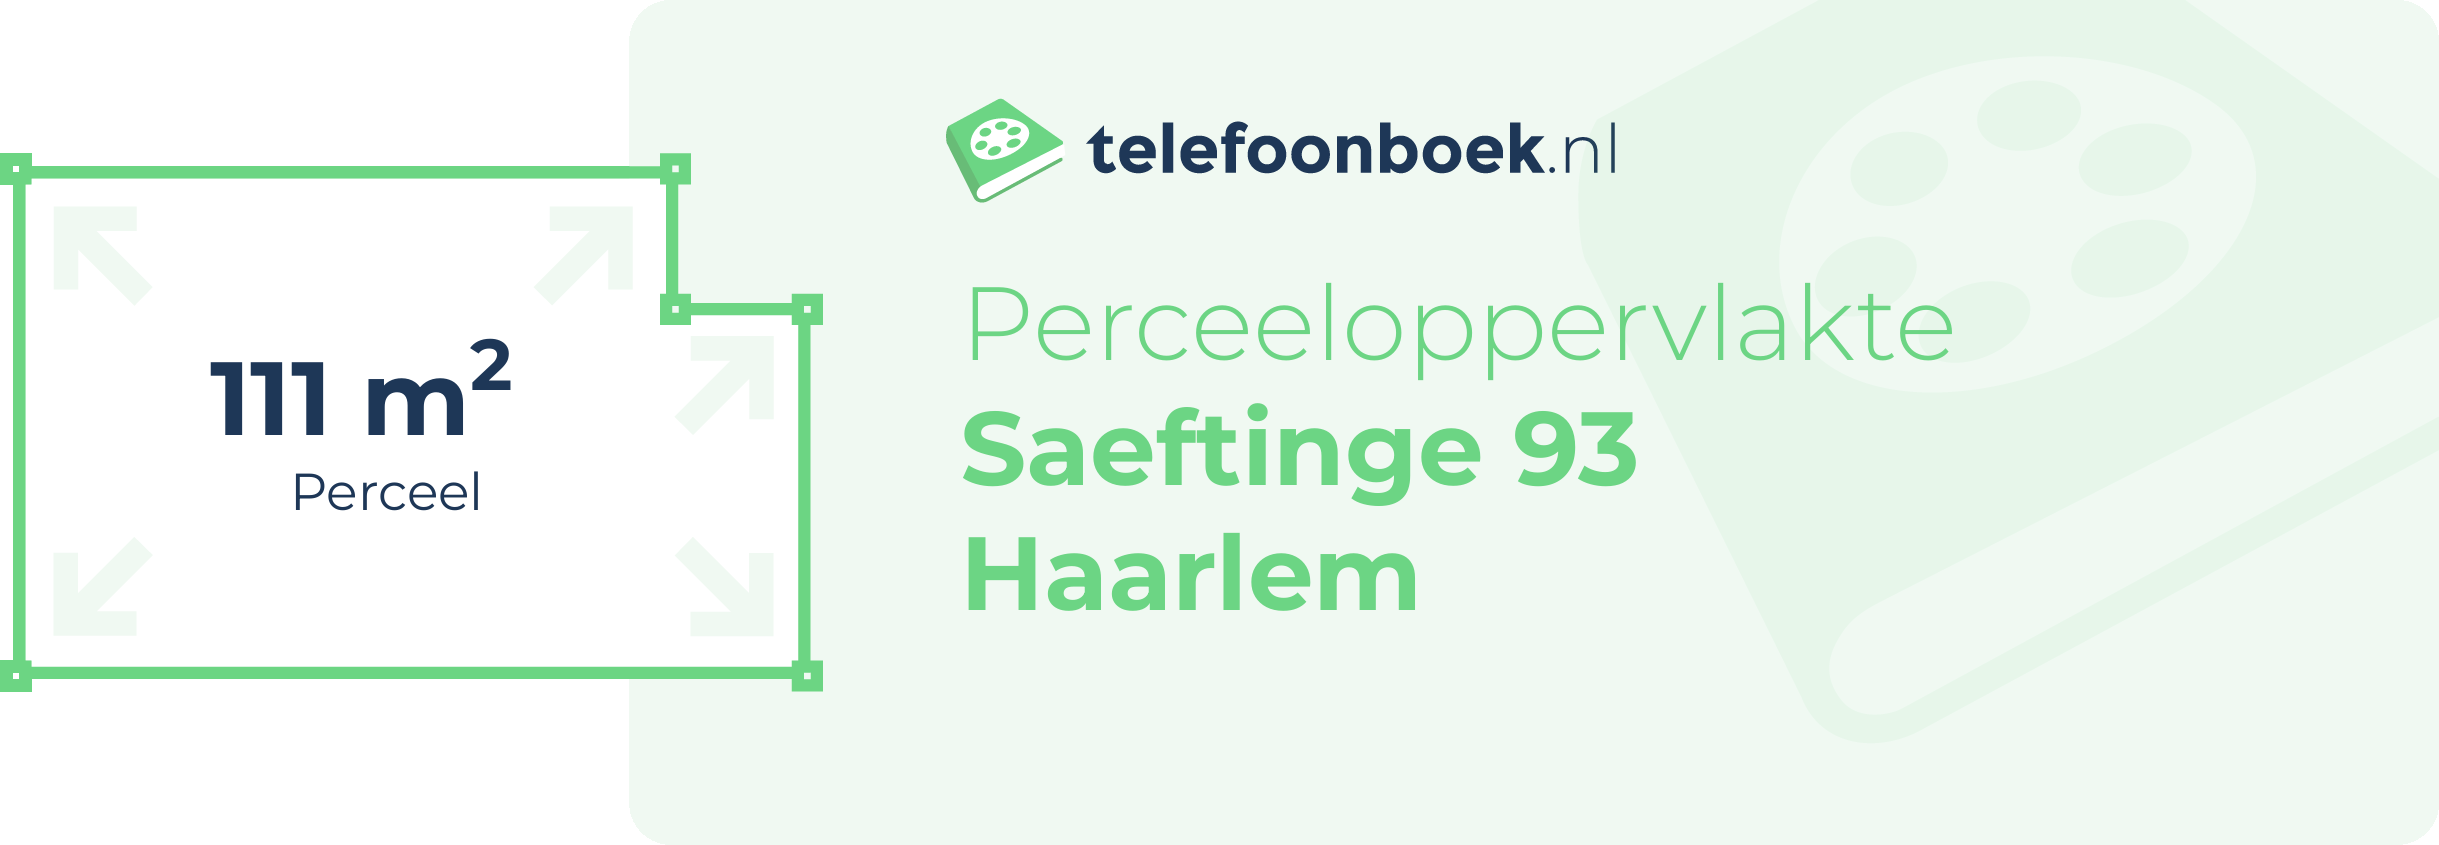 Perceeloppervlakte Saeftinge 93 Haarlem